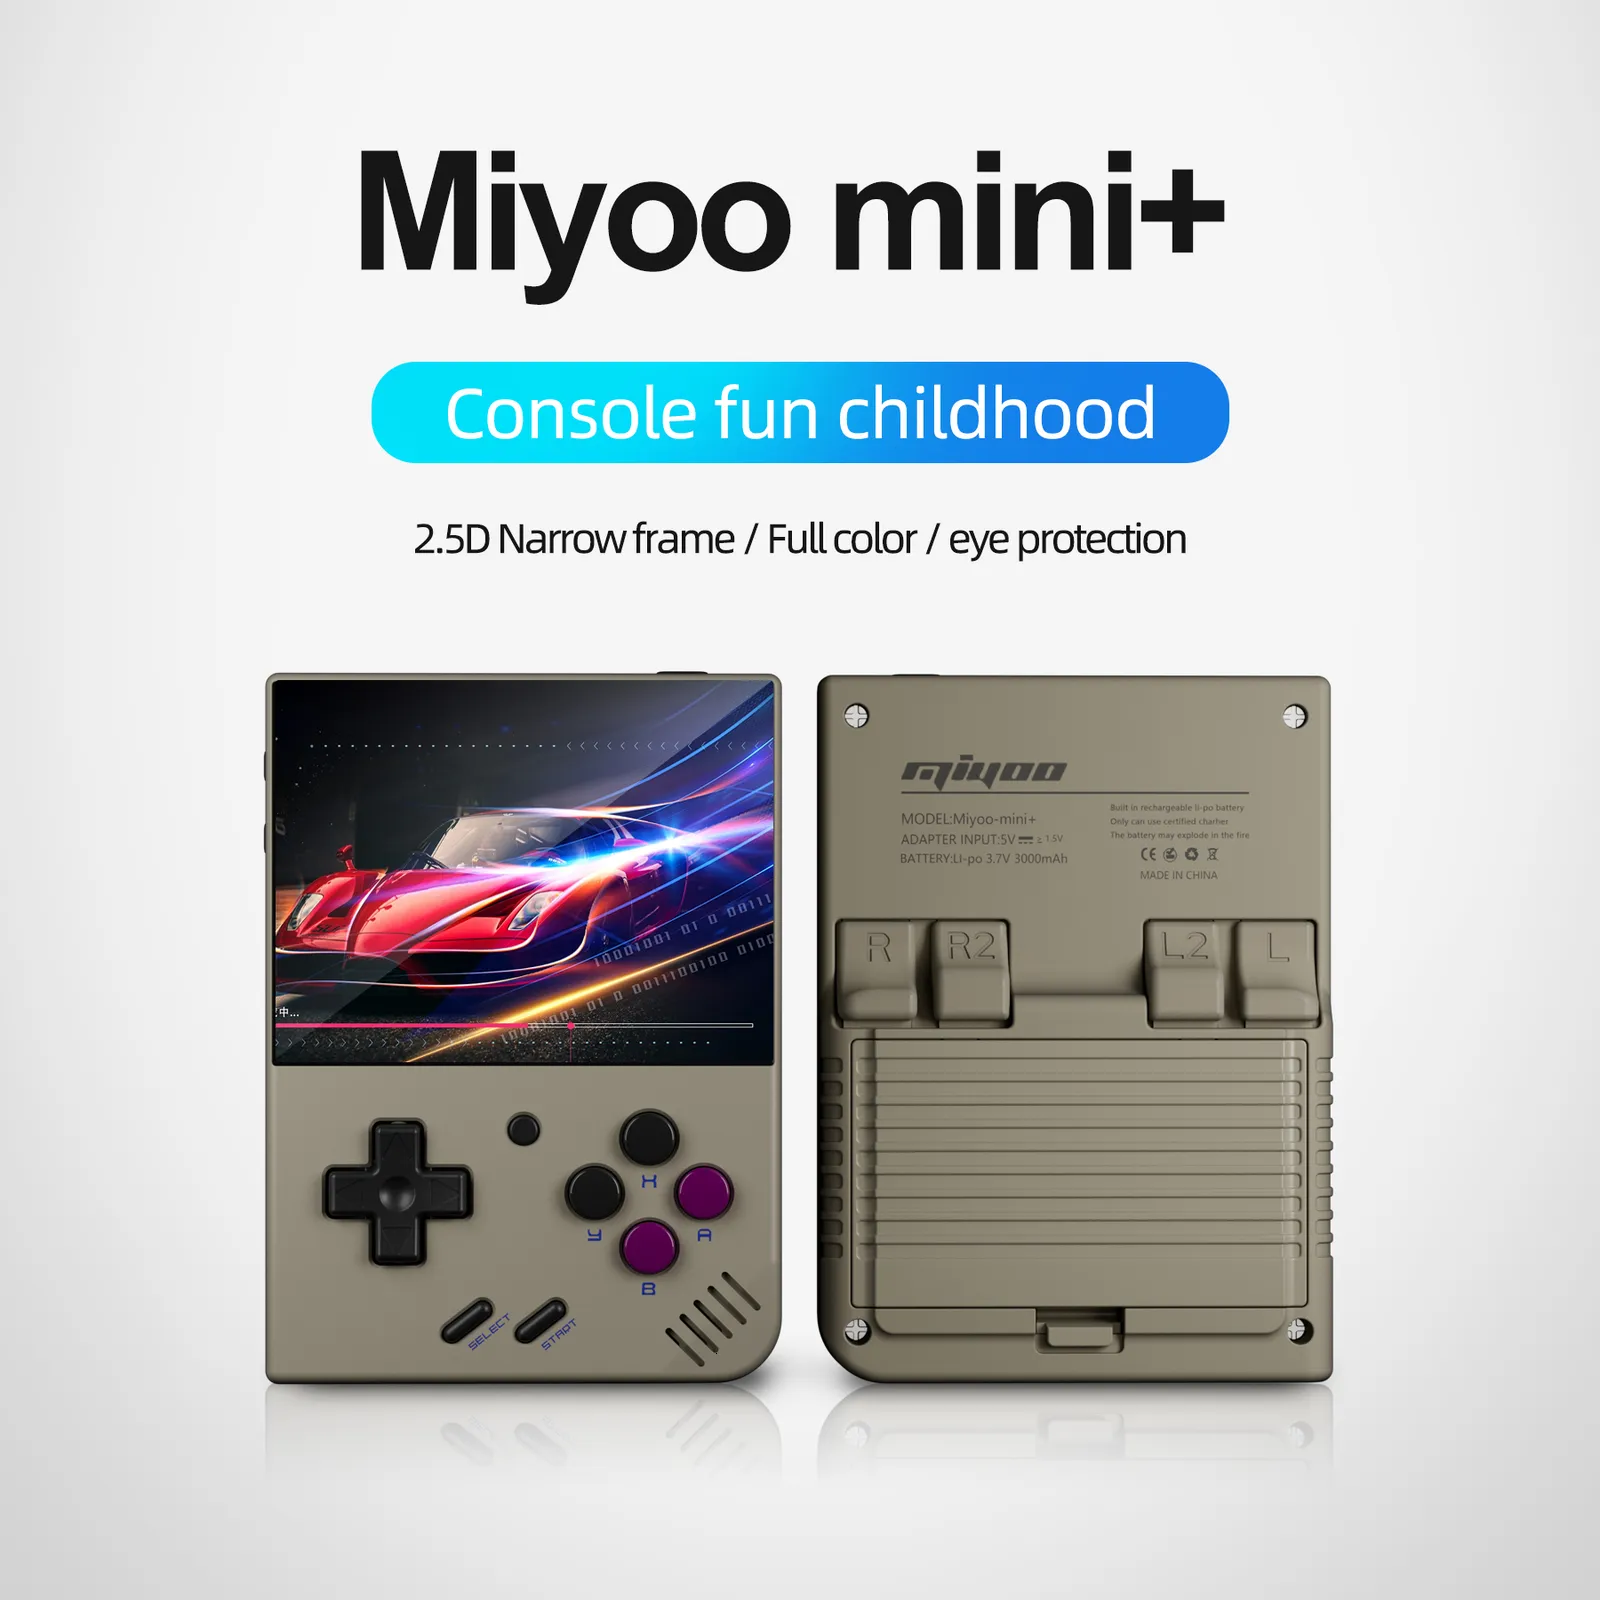 MIYOO MINI PLUS Retro Handheld Game Console, 3.5 Inch IPS HD